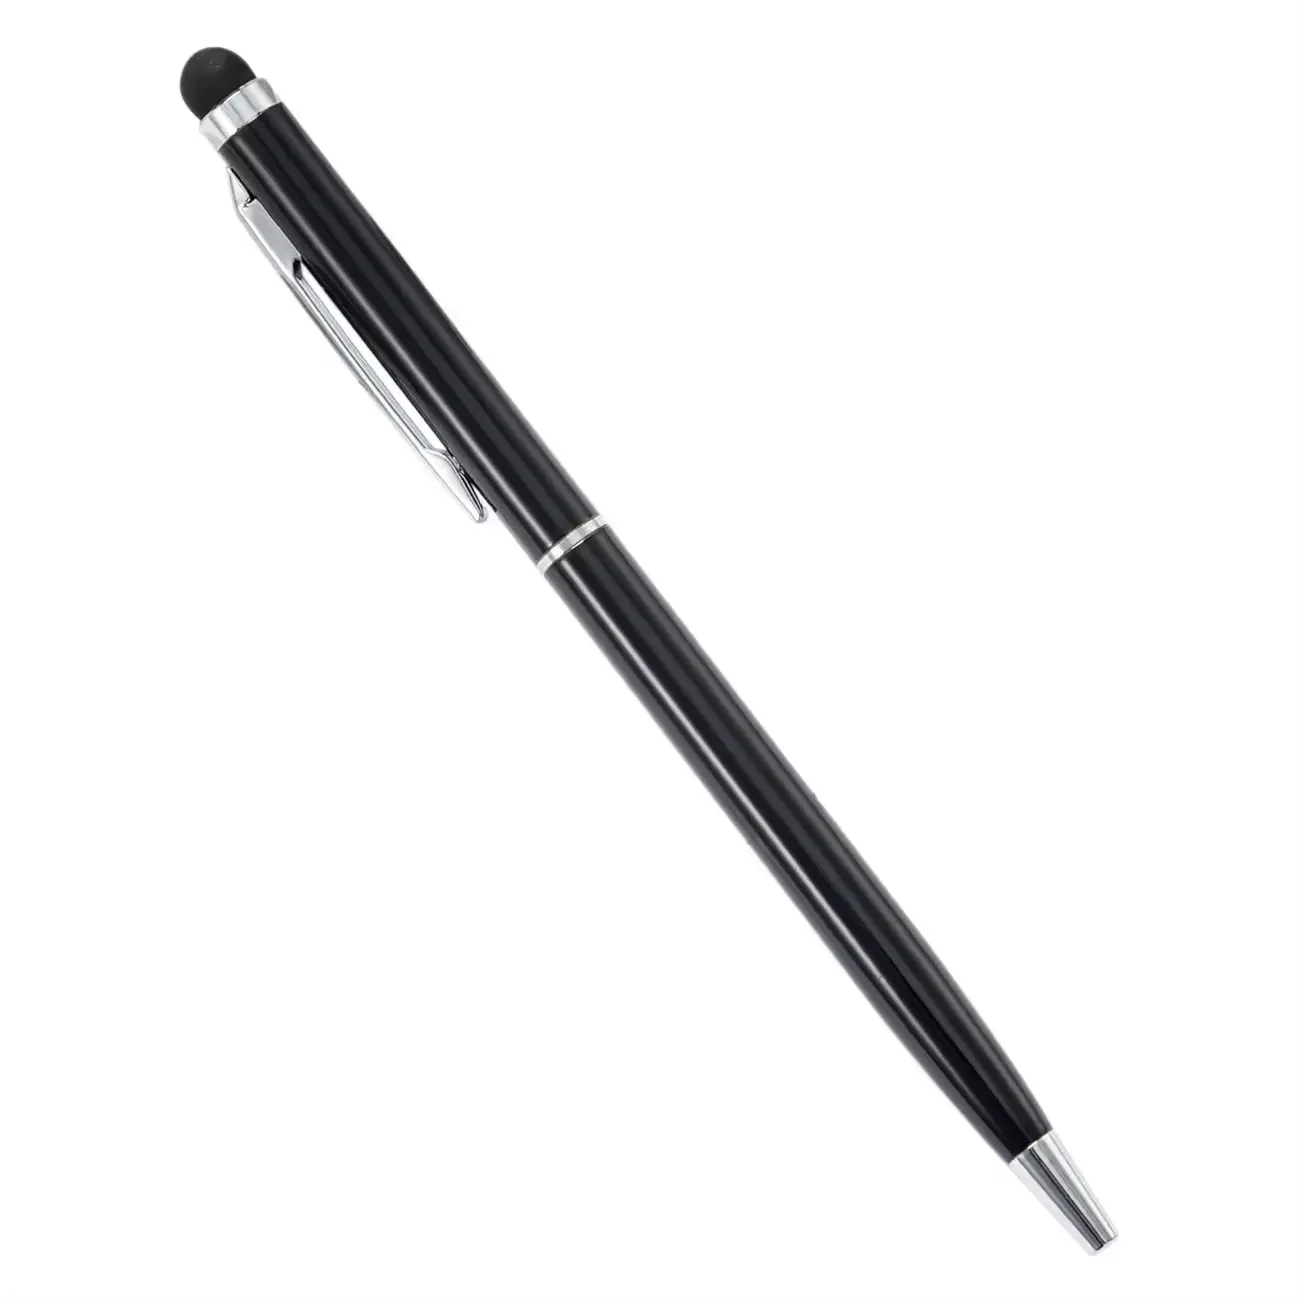 قلم حبر جاف معدني ملون تصميم جديد 2022 تصميم ترويجي حسب الطلب 2 في 1 قلم ستايلوس بشاشة لمسية